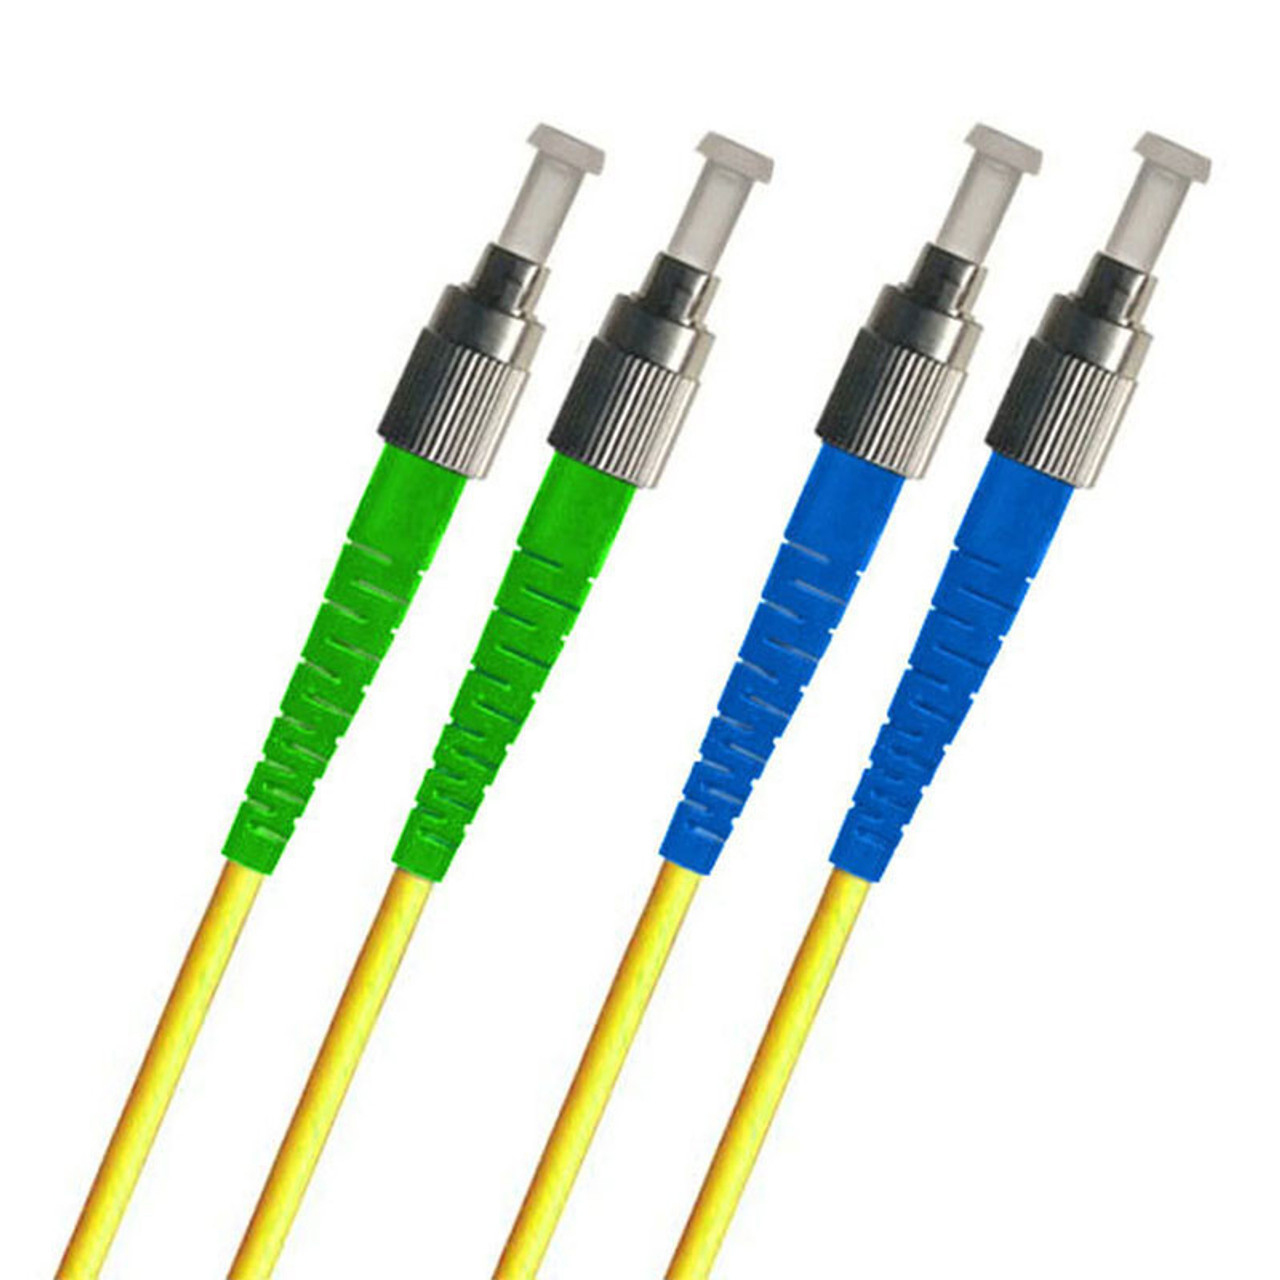 Fiber patch cables with FC connectors